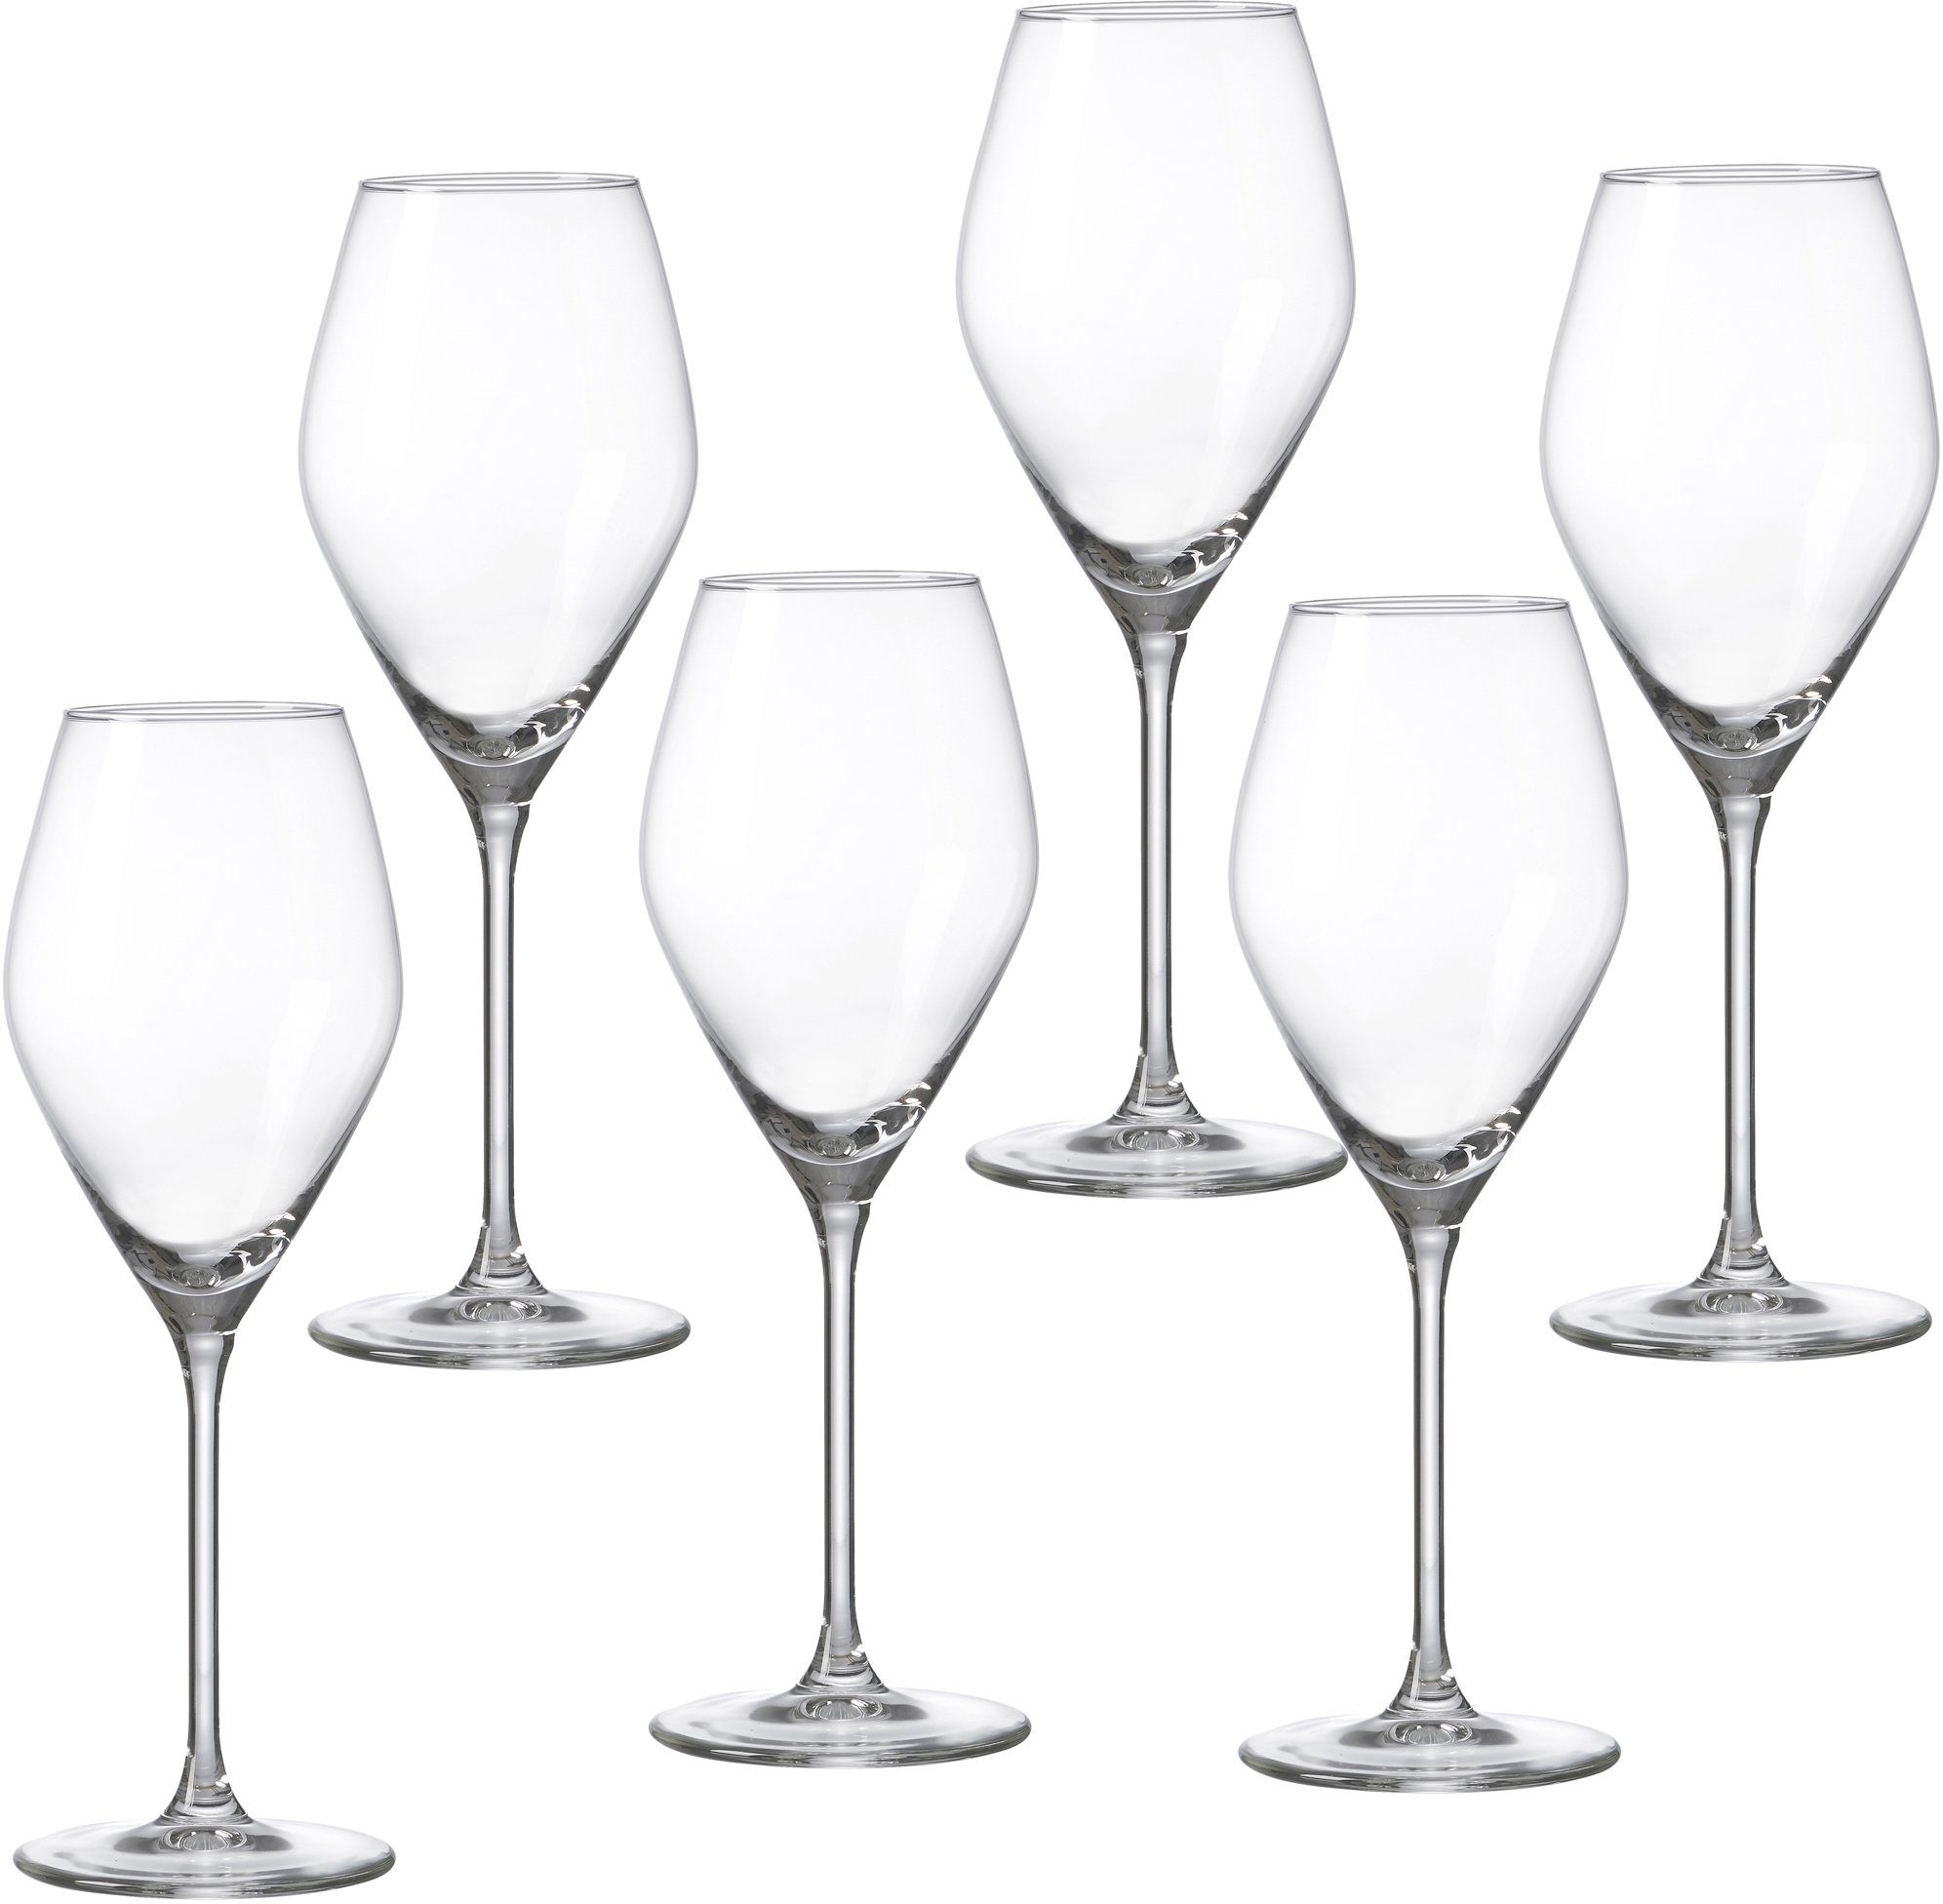 Ritzenhoff & Breker Weißweinglas Salsa, Glas, robust und kristallklar, 6-teilig